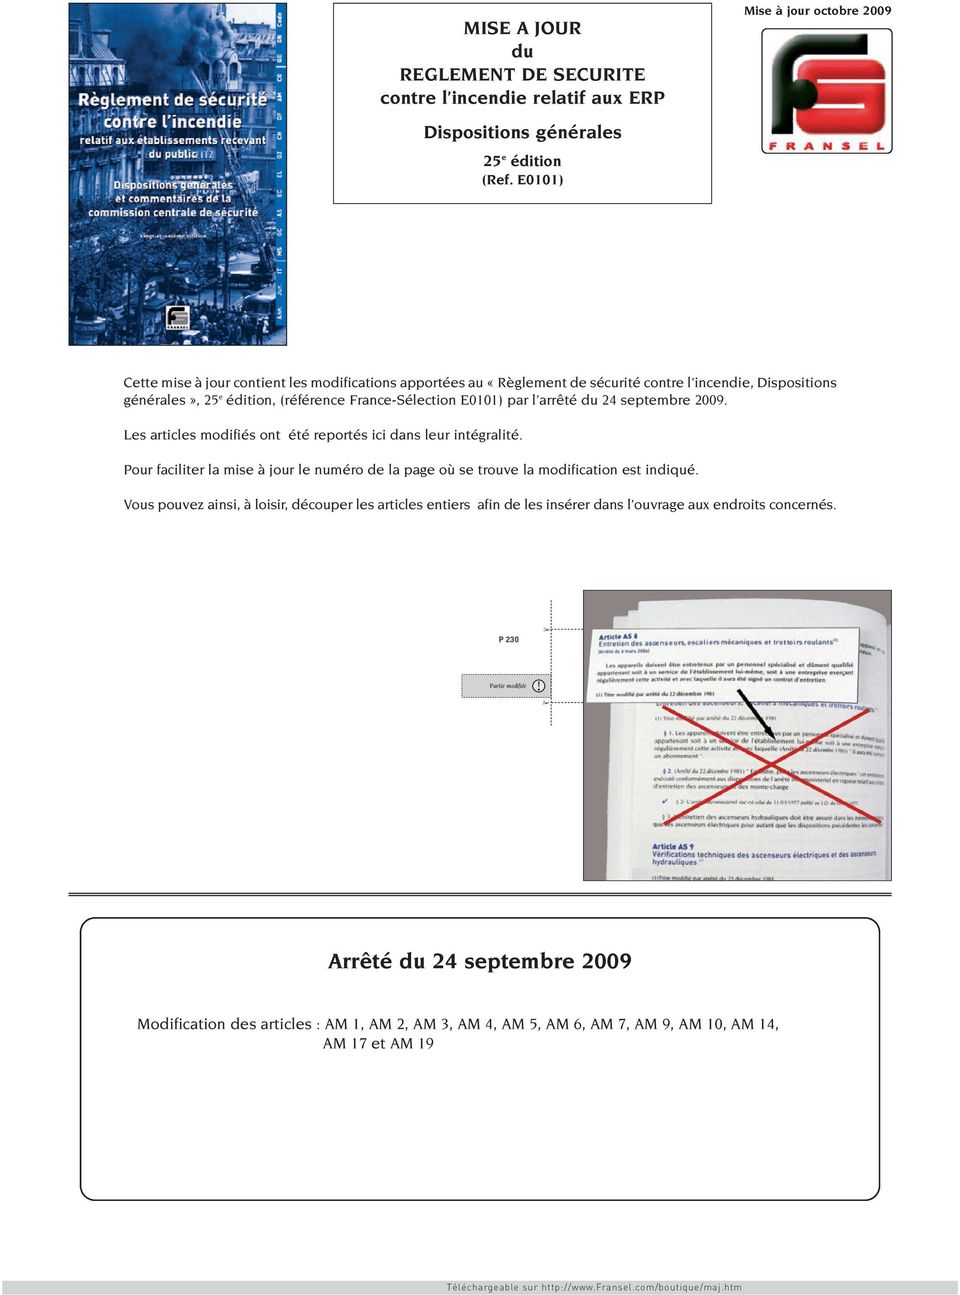 France-Sélection E0101) par l arrêté du 24 septembre 2009. Les articles modifiés ont été reportés ici dans leur intégralité.